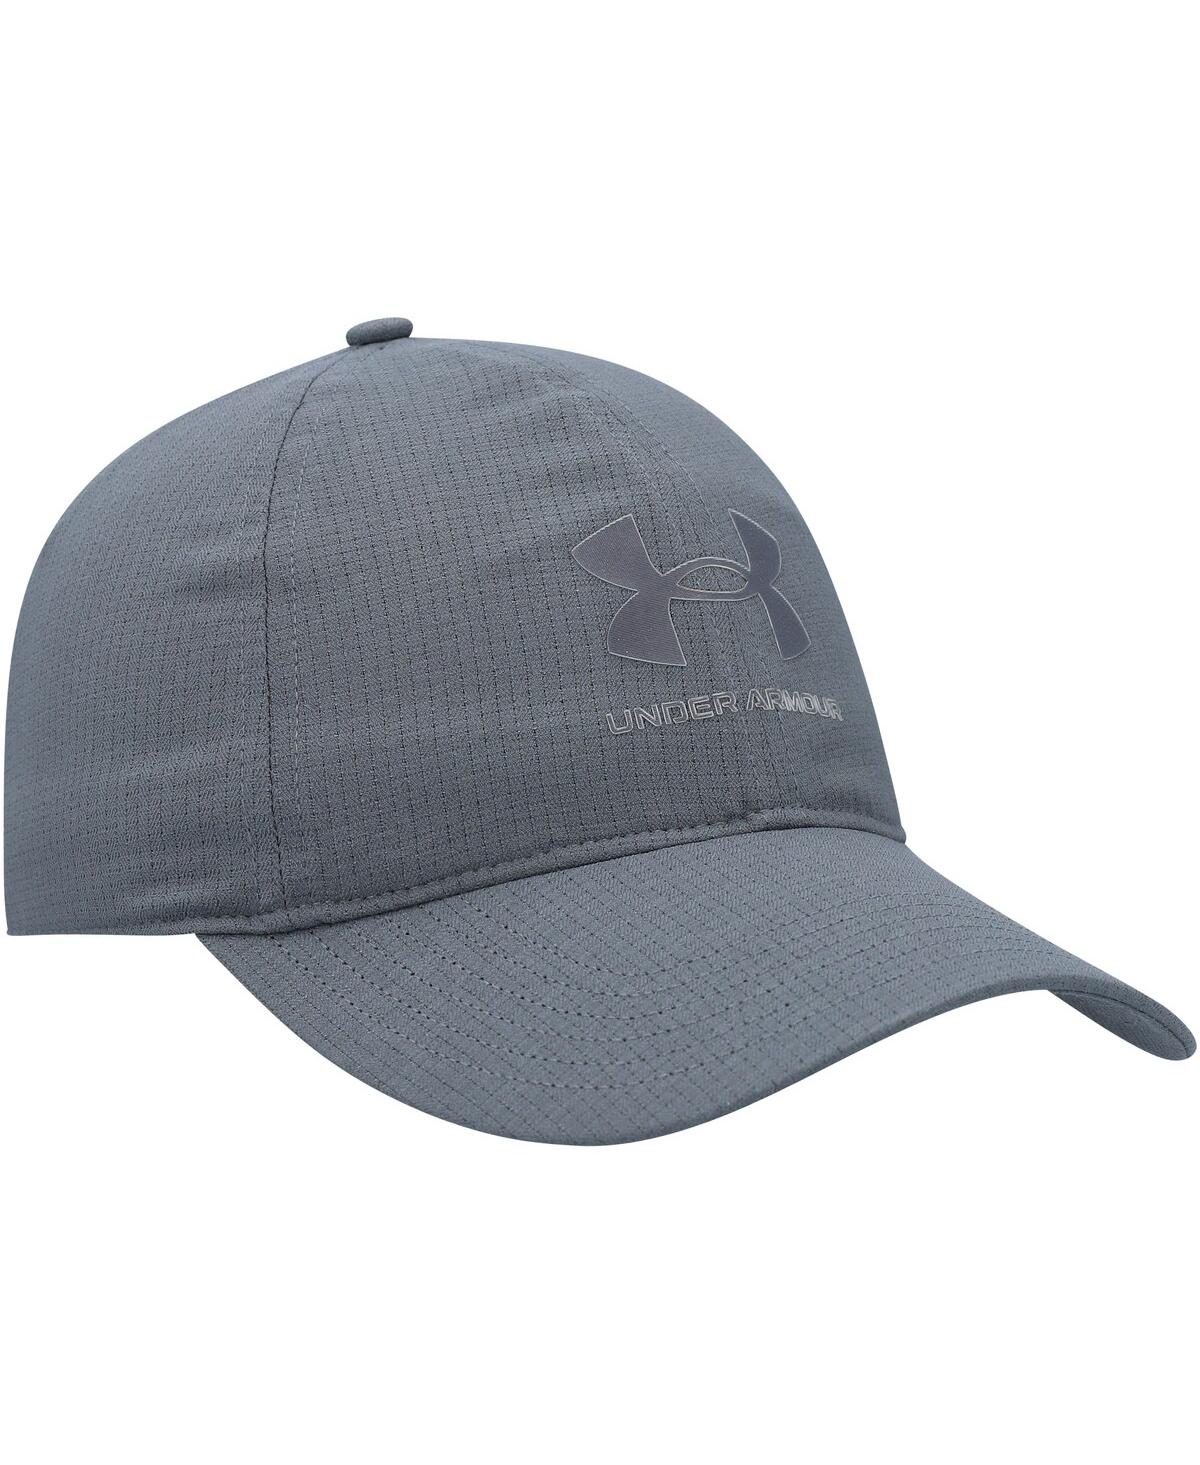 Shop Under Armour Men's  Graphite Performance Adjustable Hat